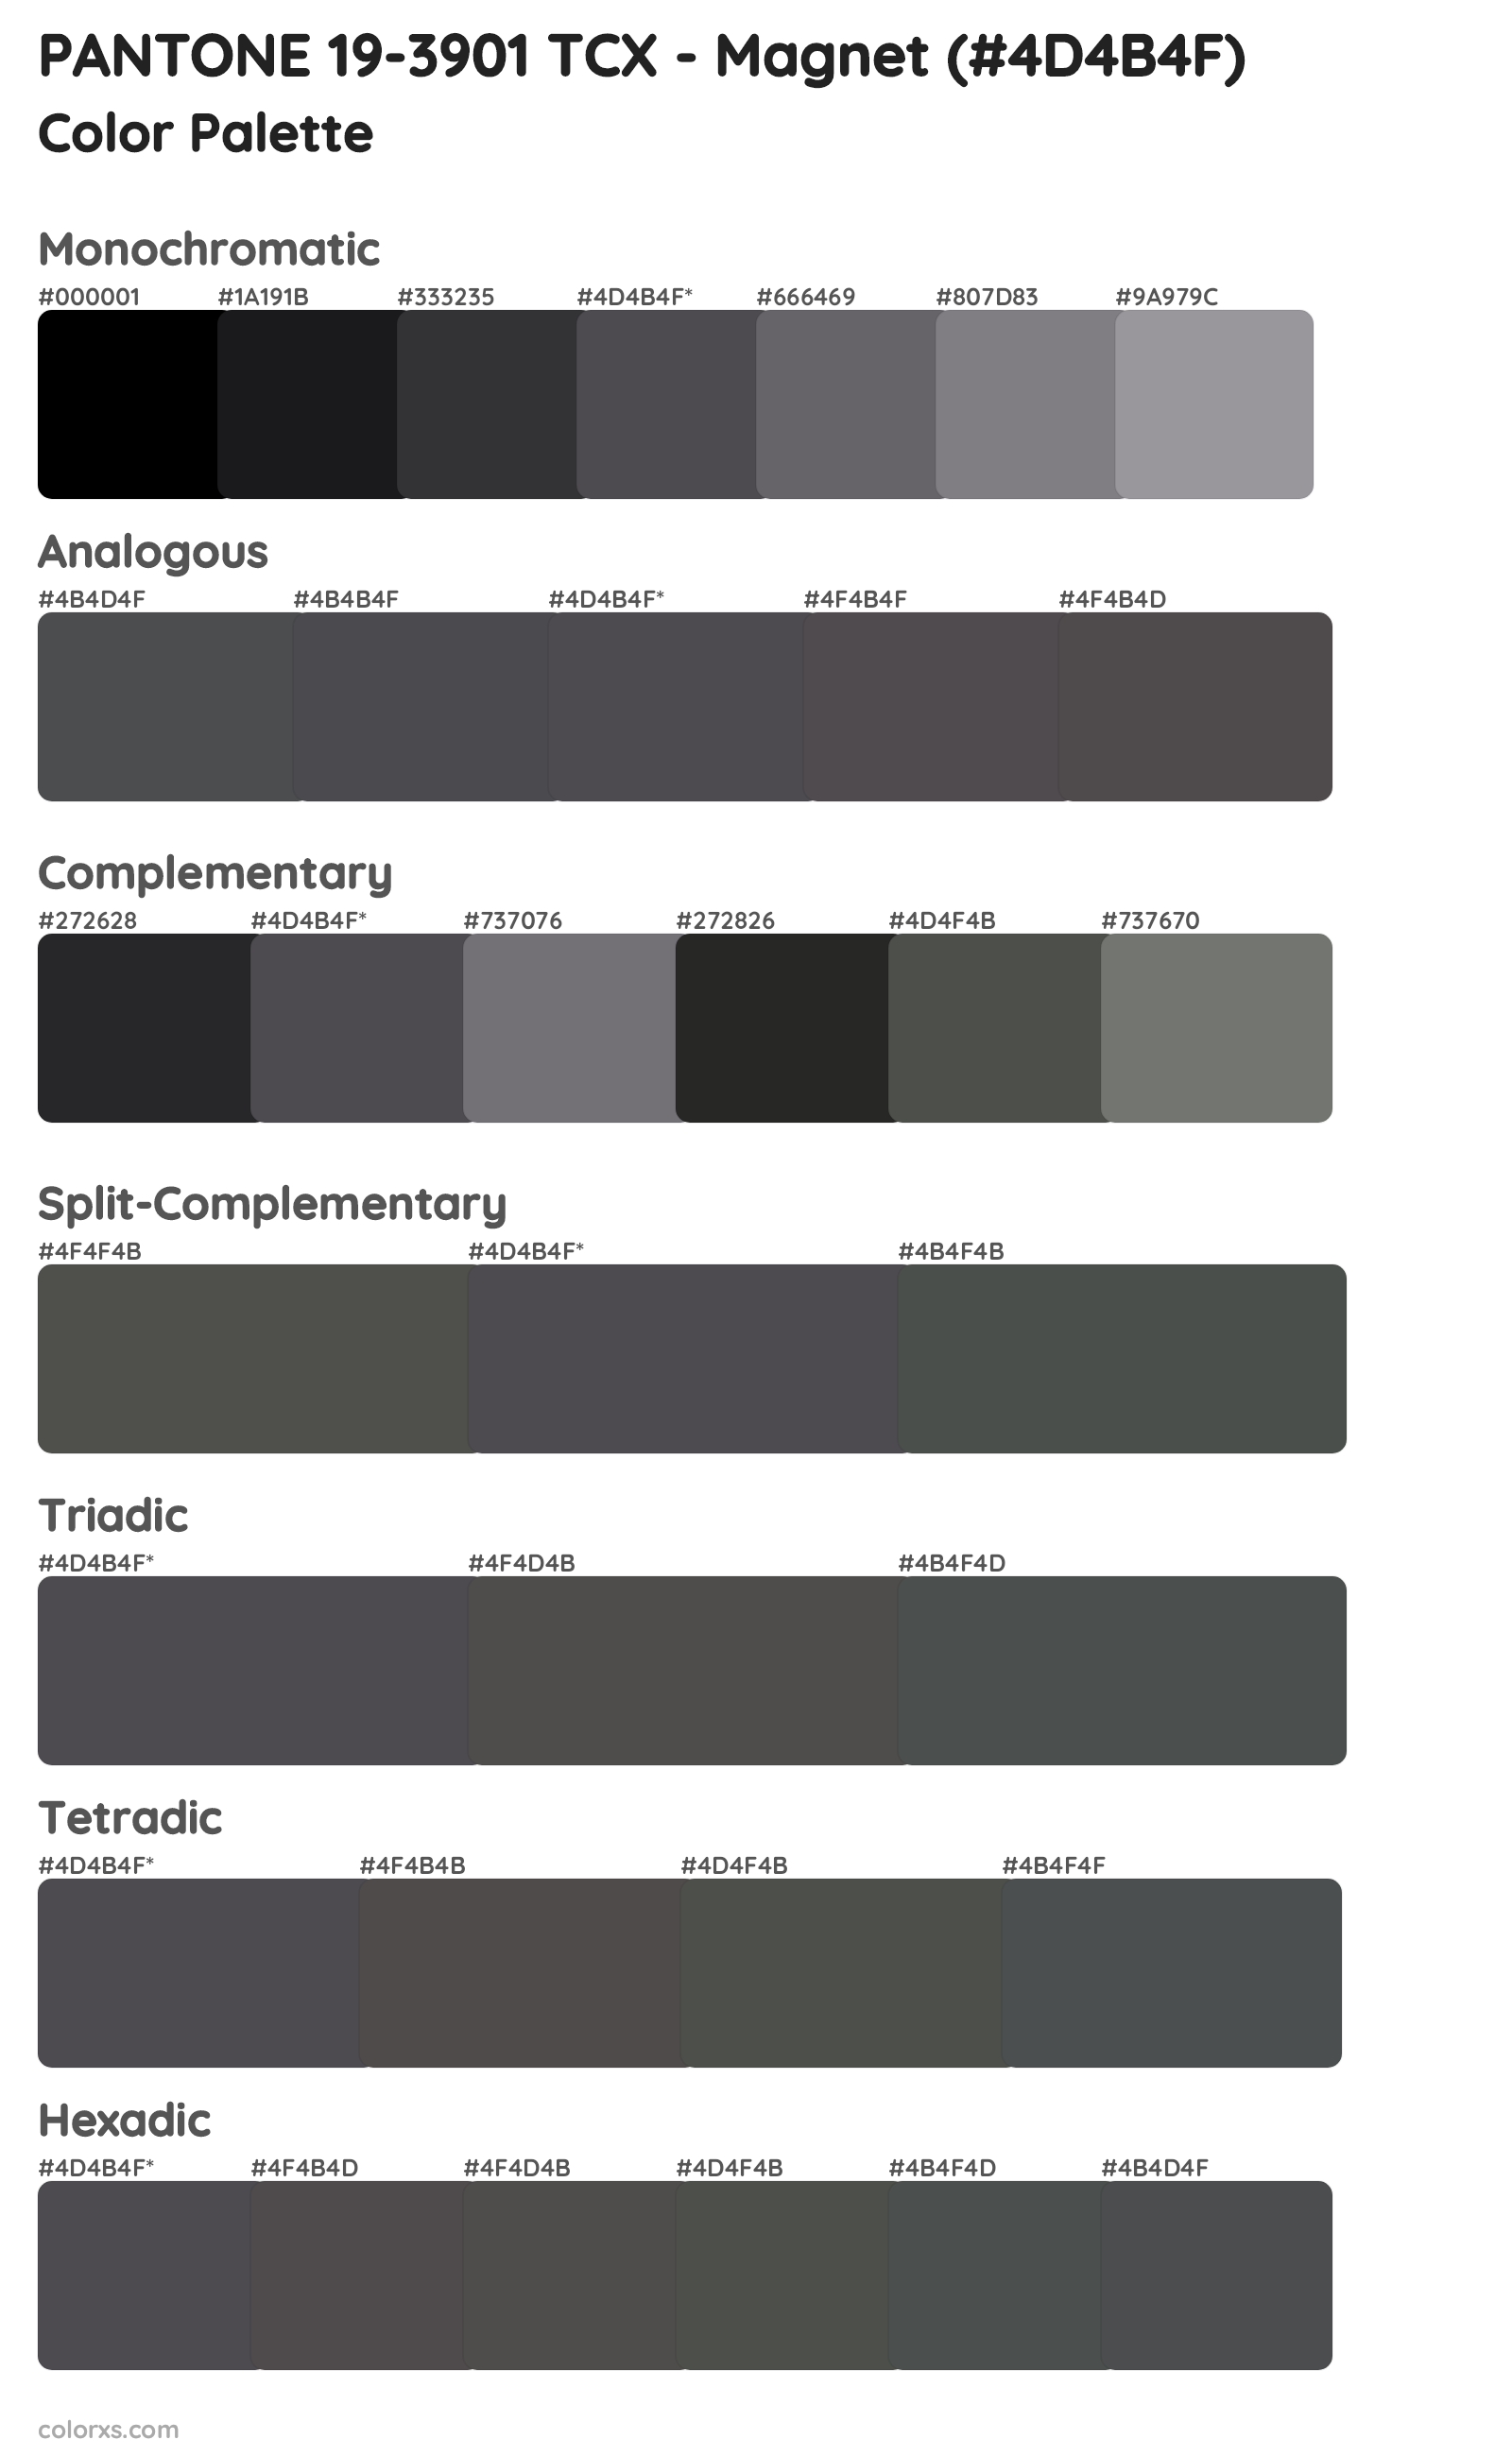 PANTONE 19-3901 TCX - Magnet Color Scheme Palettes